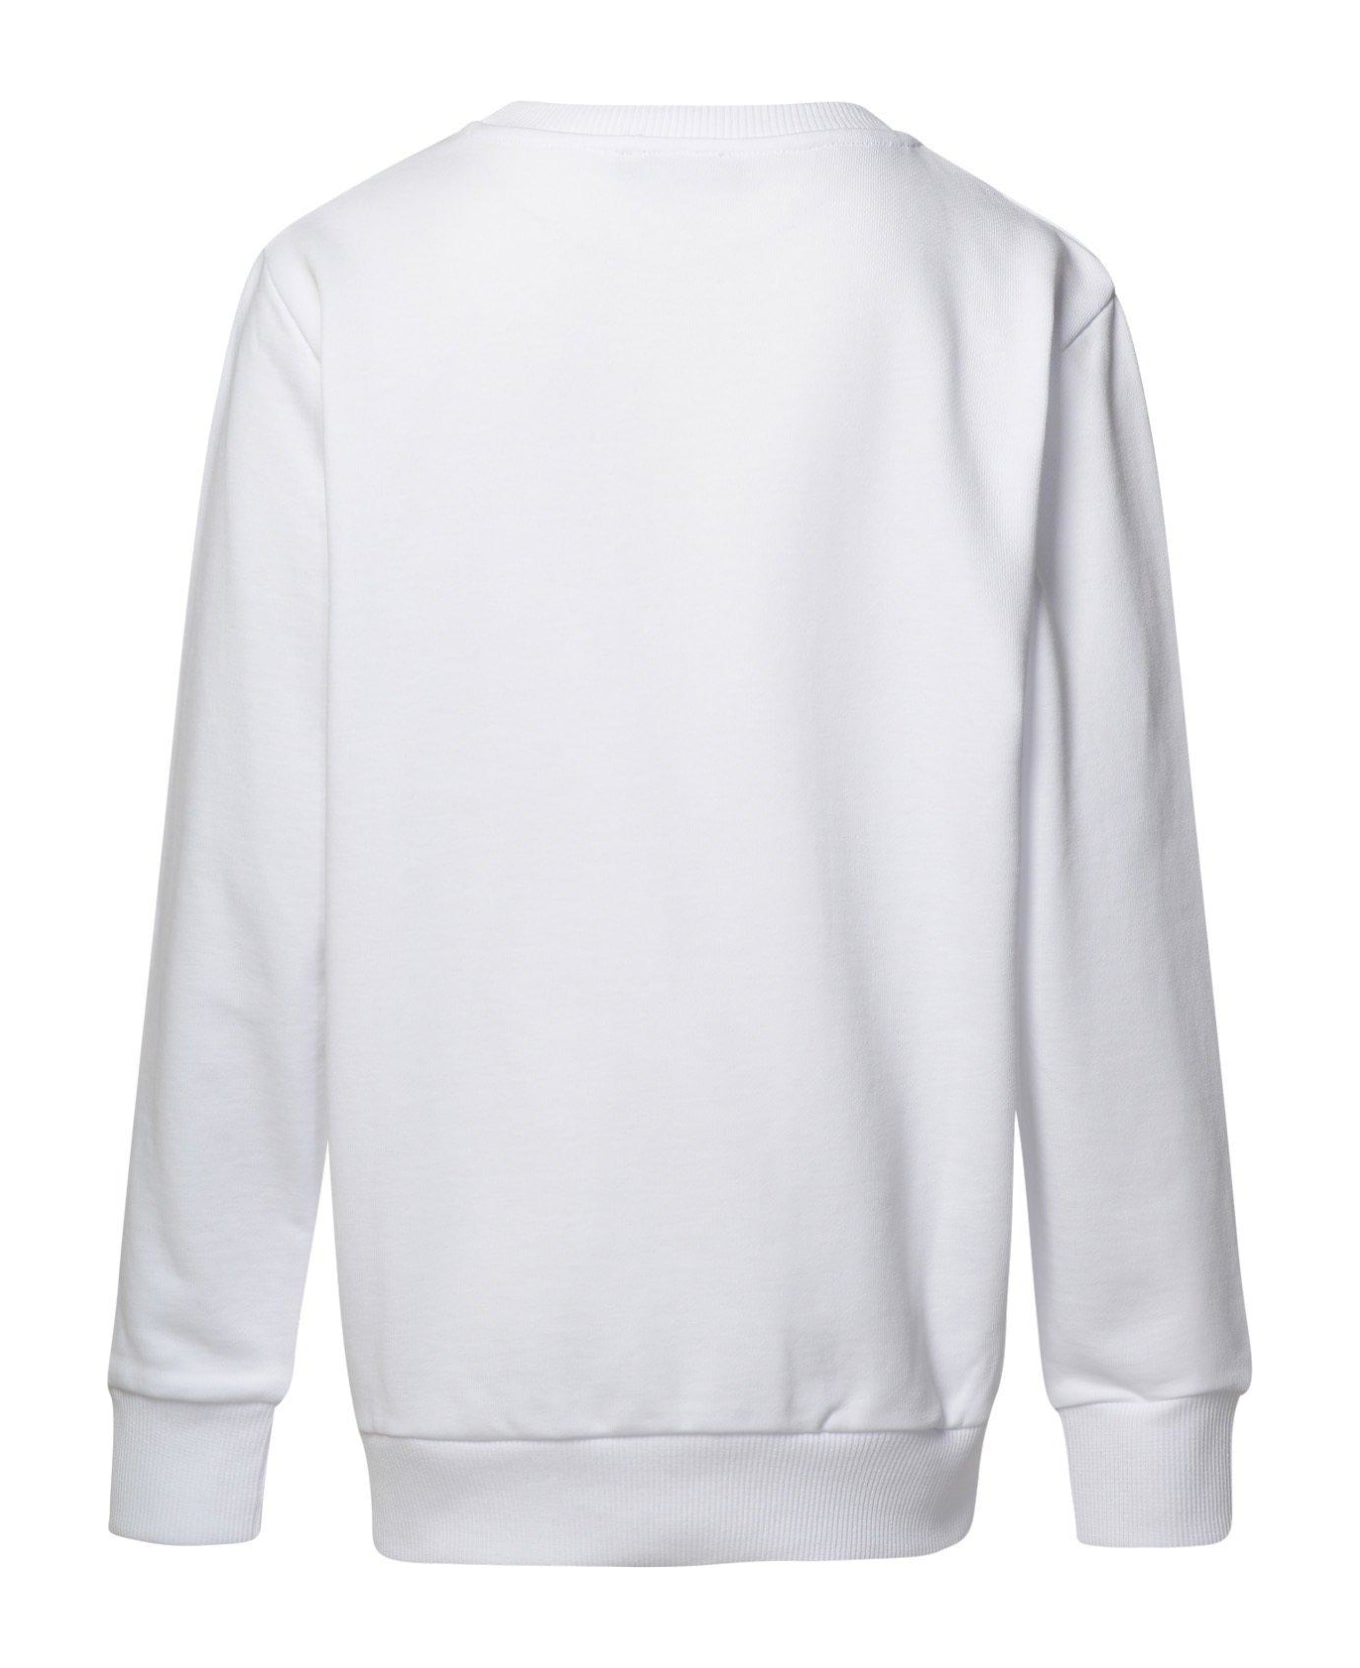 Balmain Logo Embellished Crewneck Sweatshirt - White/silver